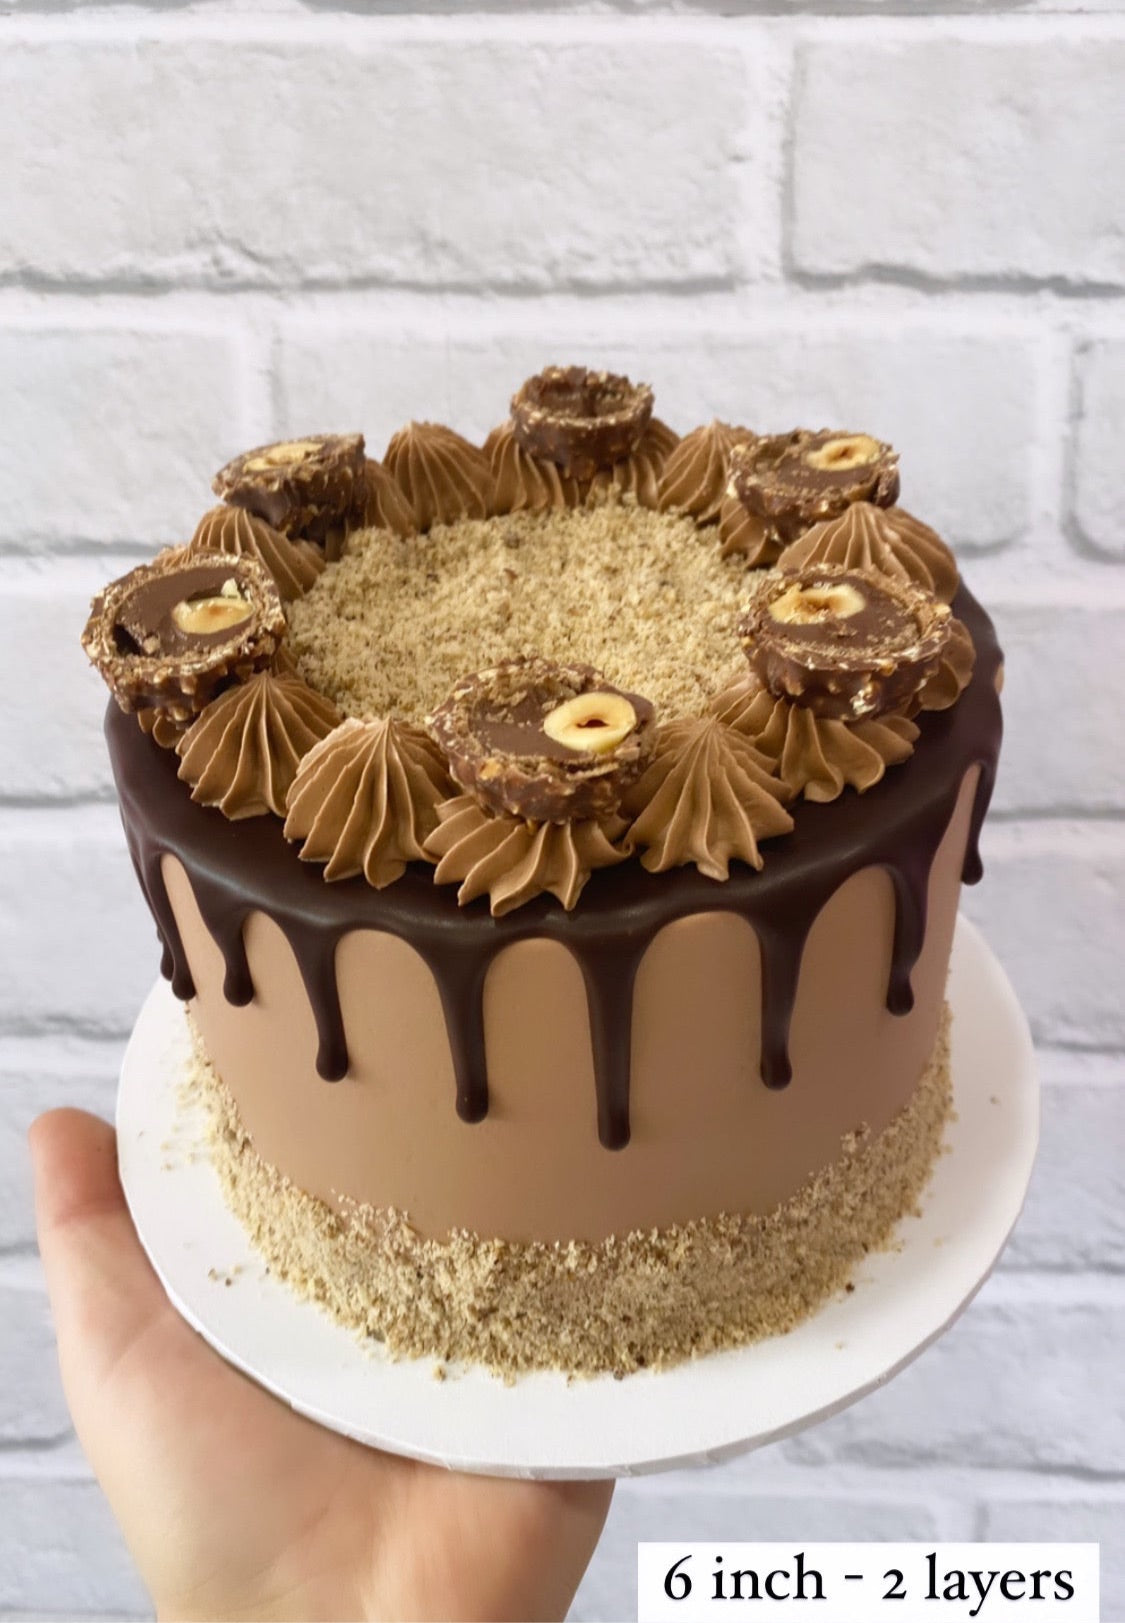 Buy/Send Ferrero Rocher Square Cake Online @ Rs. 1799 - SendBestGift